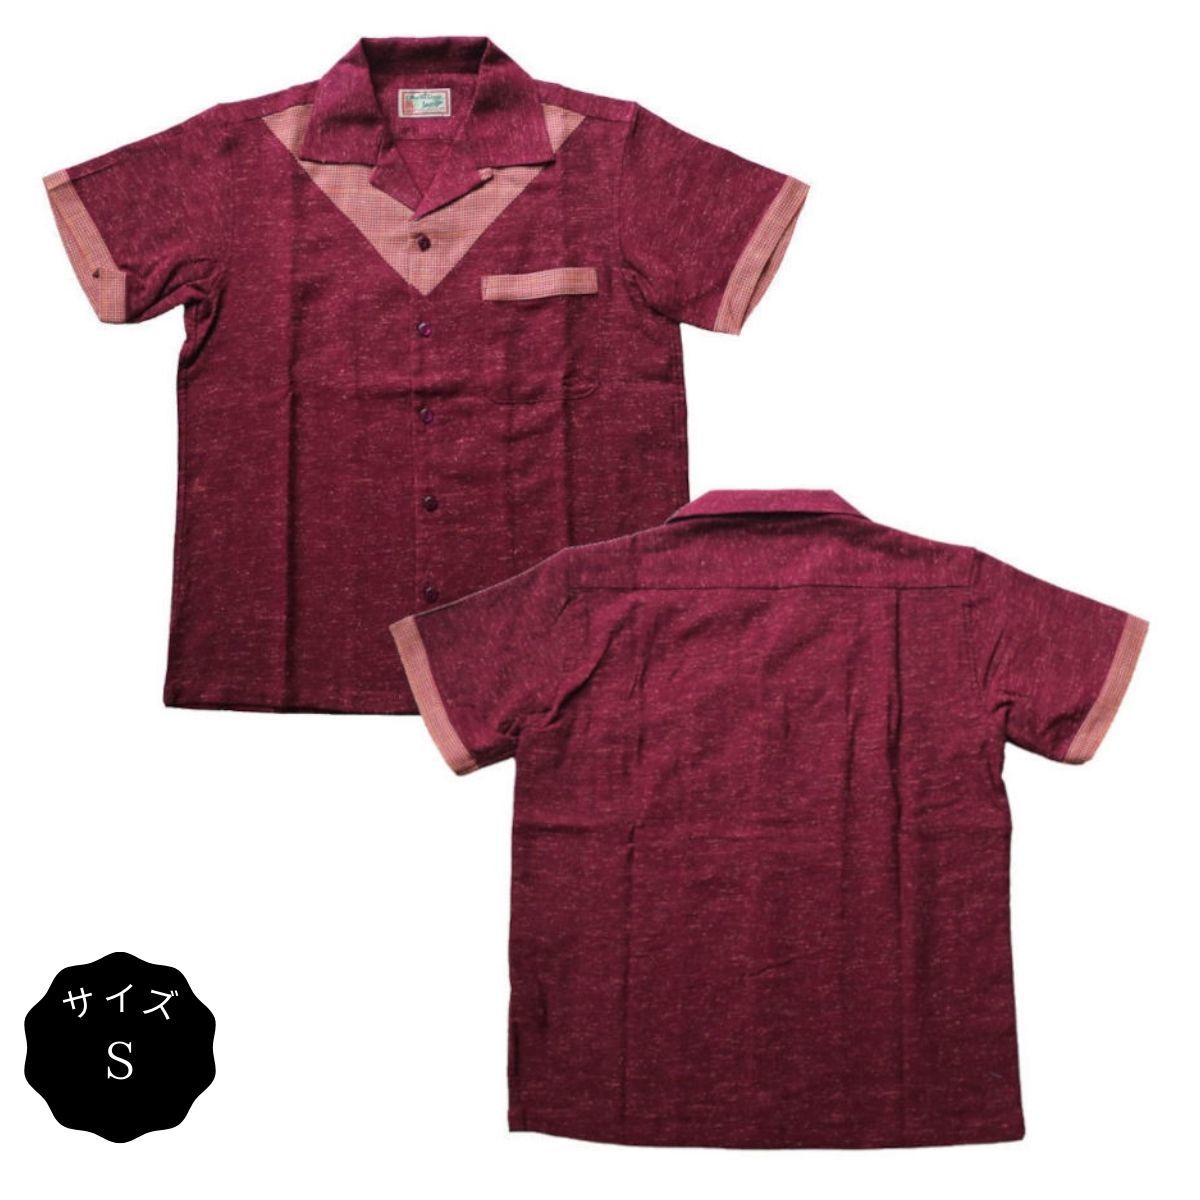 オープンシャツ 半袖 メンズ ネップＶ切替オープンカラーシャツ バーガンディー サイズS ロックンロール ロカビリー グッドロッキン